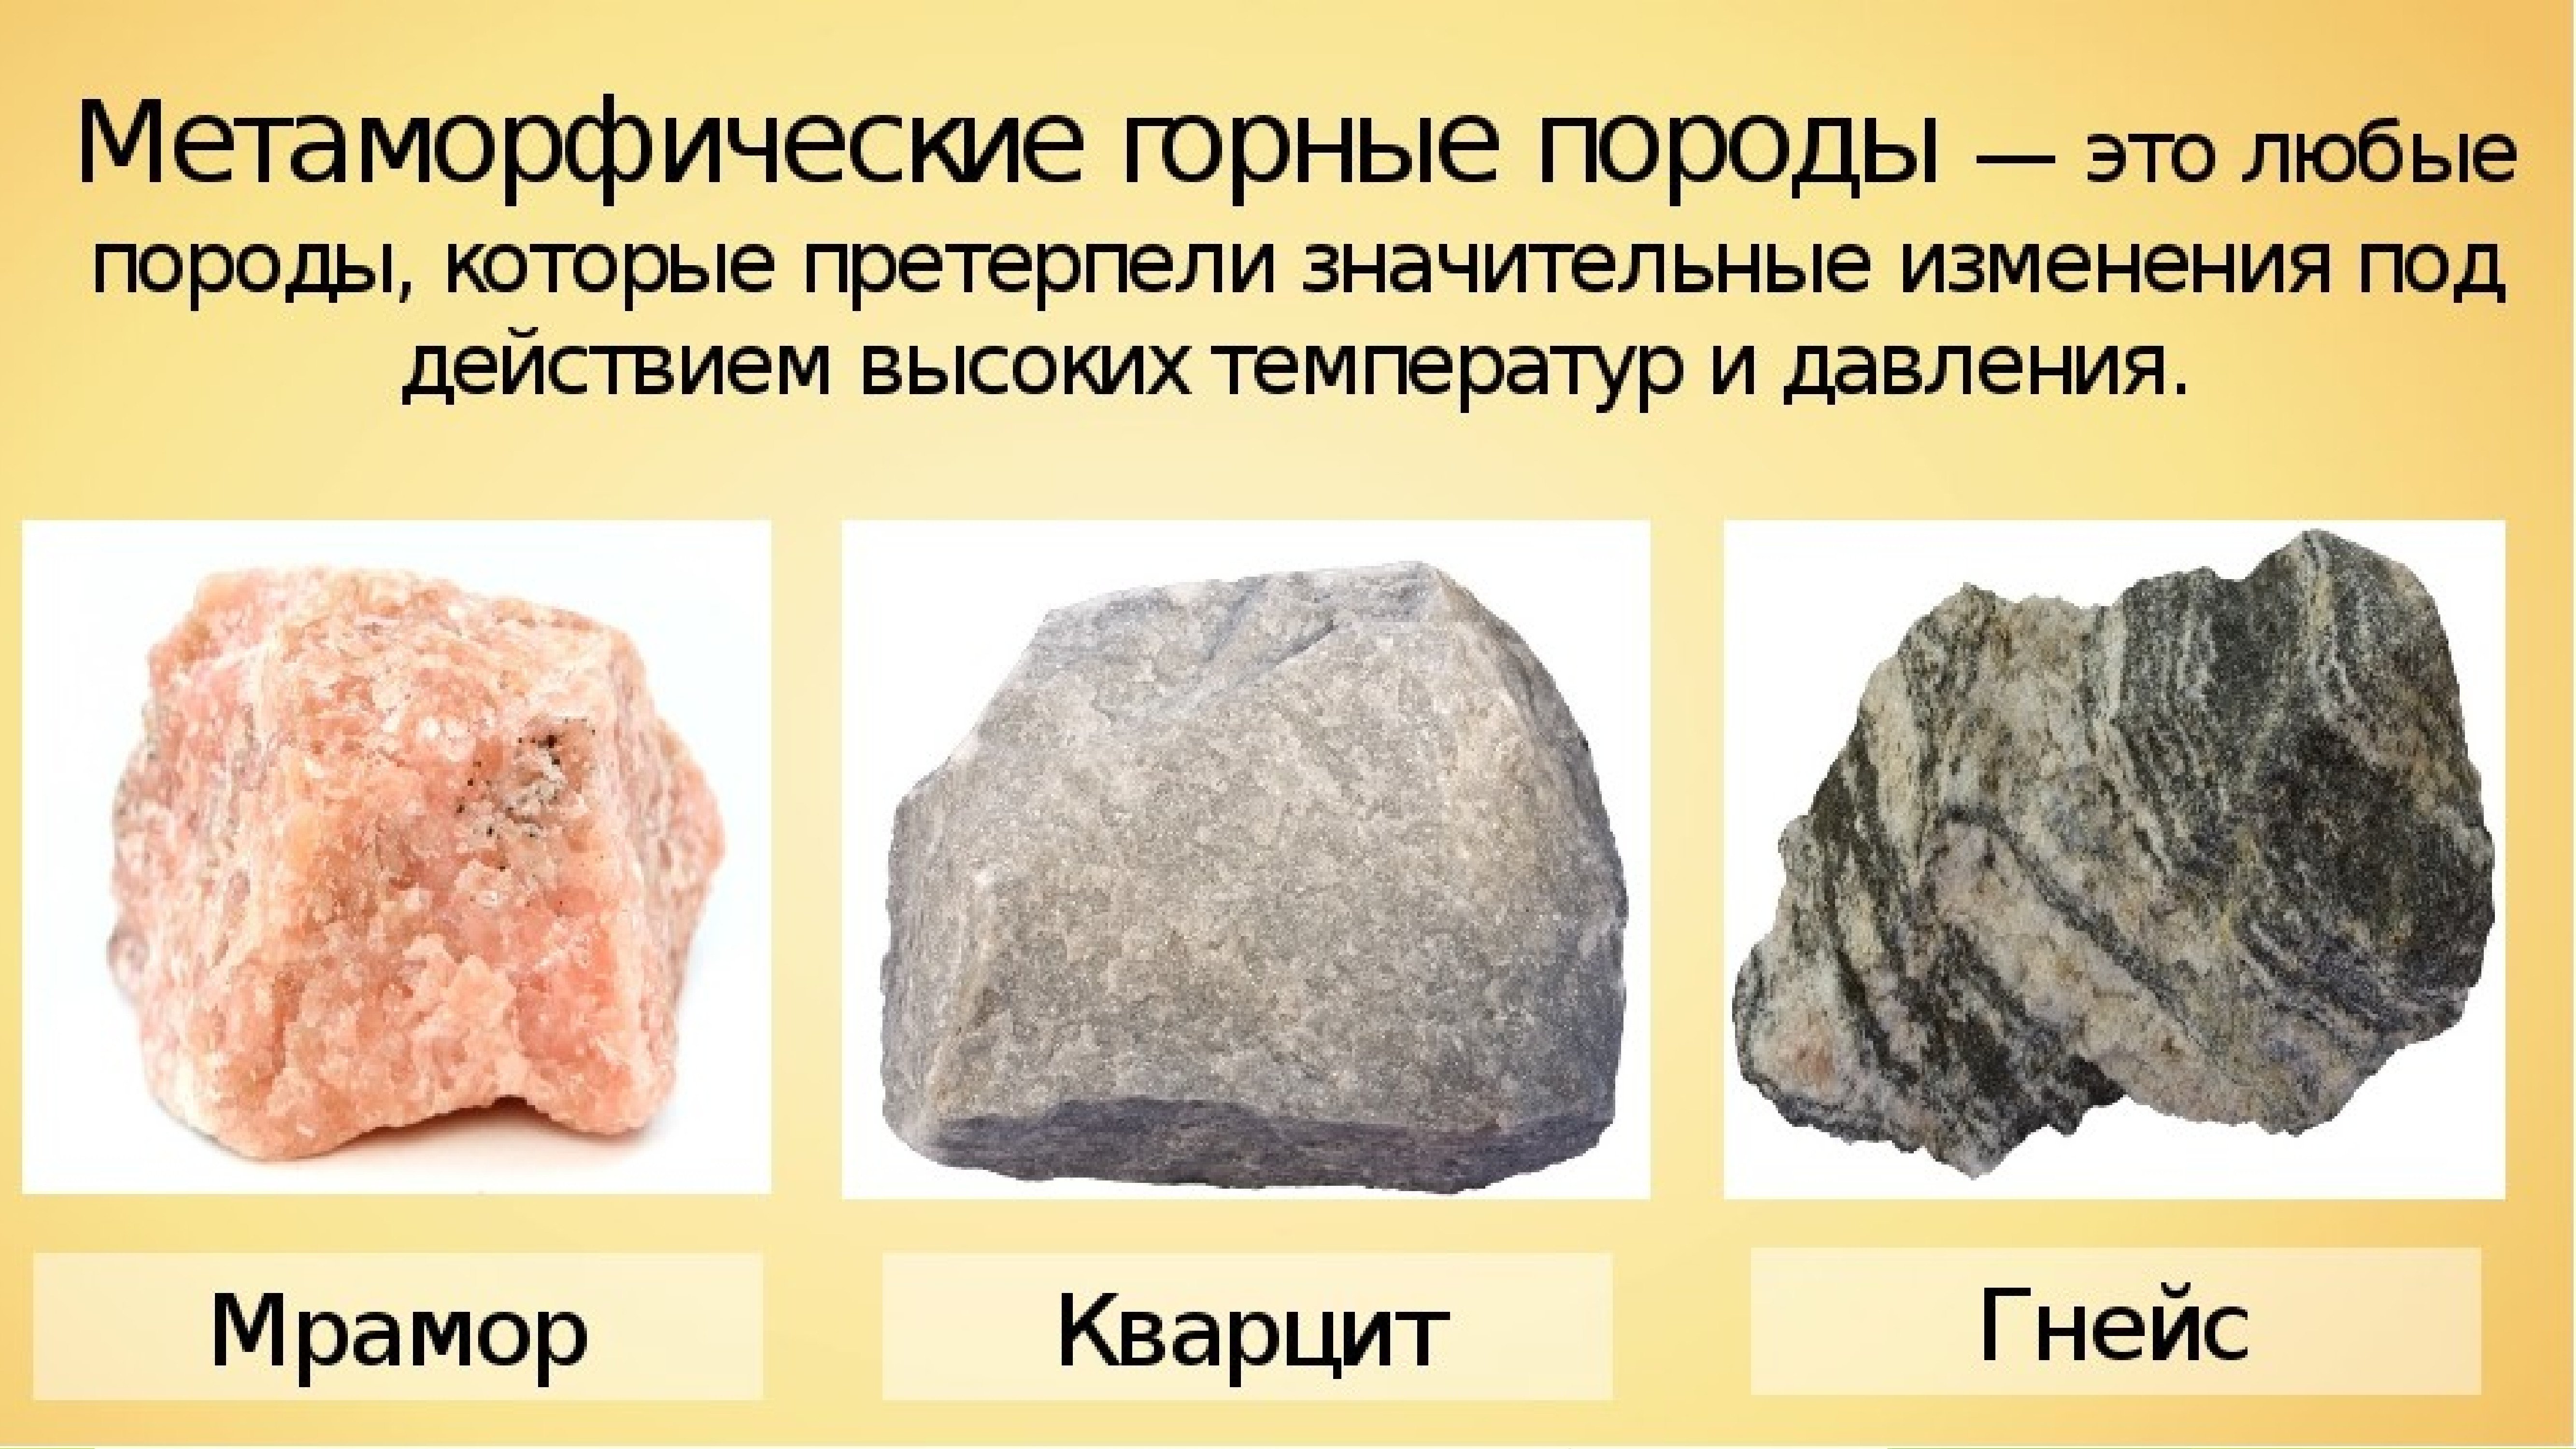 Какие метаморфические породы образуются из. Метамлорфическиегорные породы минералов. Горные породы метаморфические породы. Метаморфические образовавшиеся из магматических пород. Метаморфические горные породы камни.